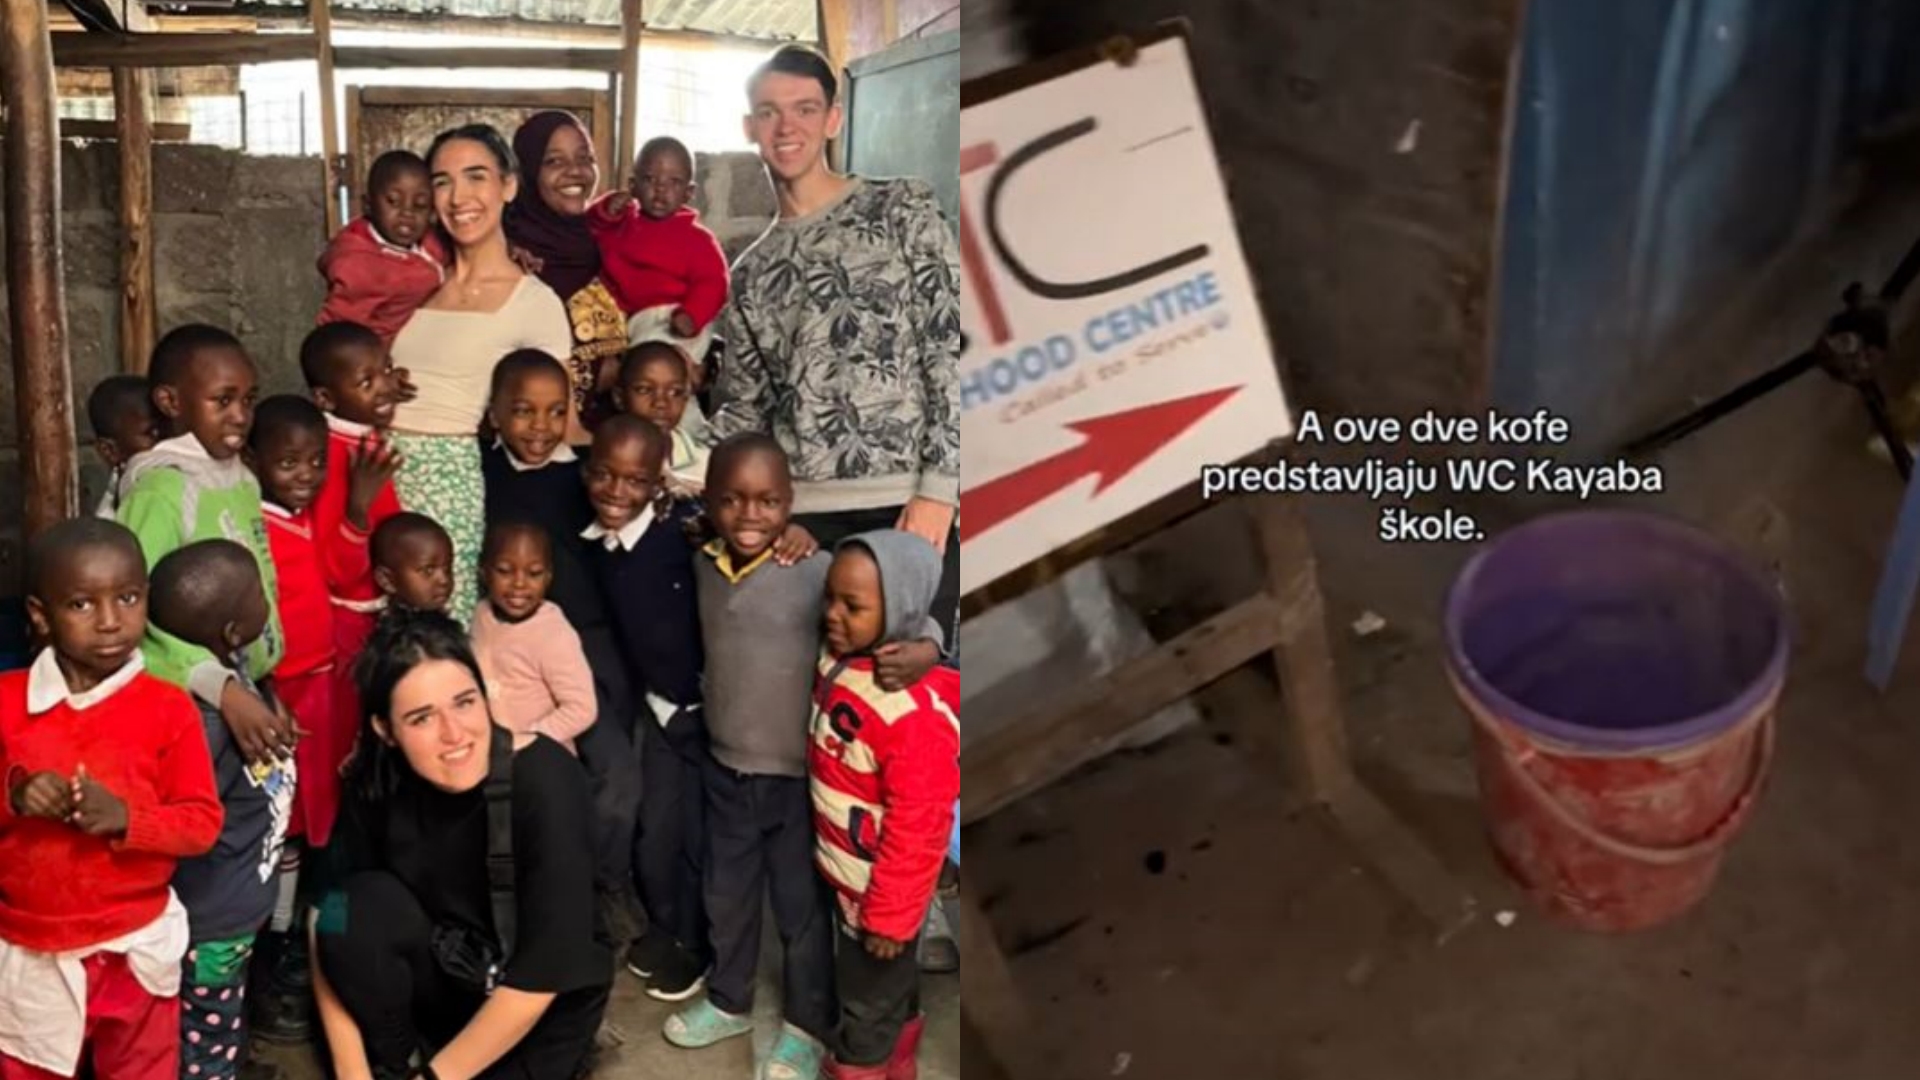 studentica iz srbije koja volontira u africi s učenicima i kanta koja predstavlja wc u školi